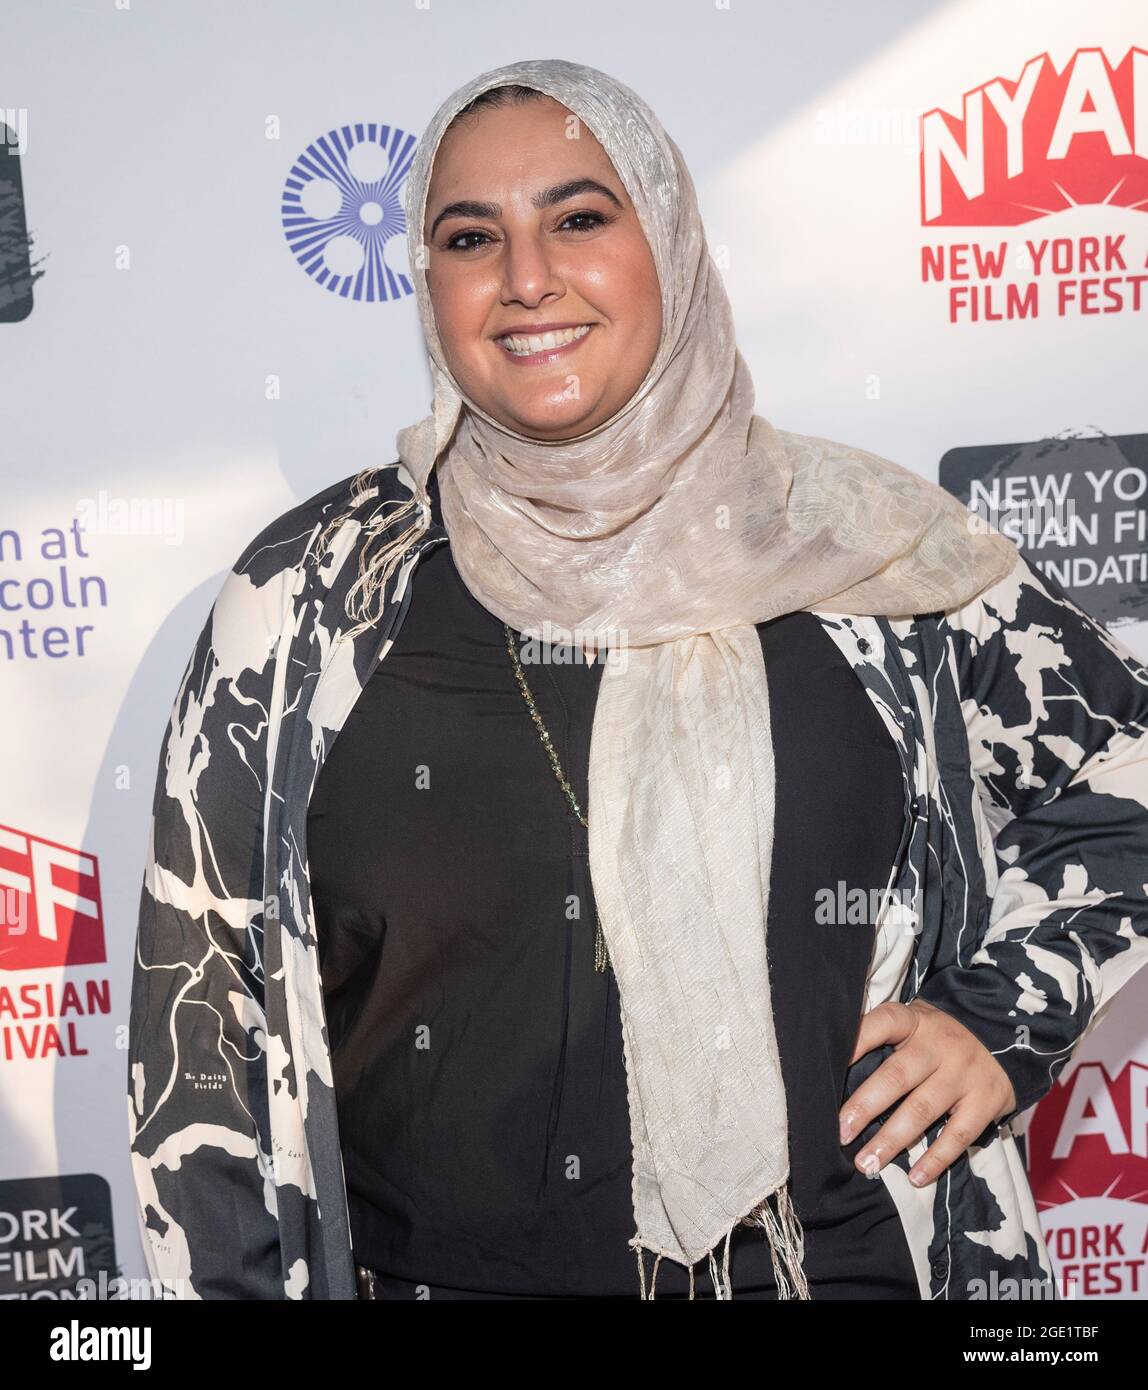 New York, NY - 14. August 2021: Iman Zawahry nimmt an der Premiere des ersten amerikanischen muslimischen rom-Com-Films Americanish im SVA-Theater Teil Stockfoto